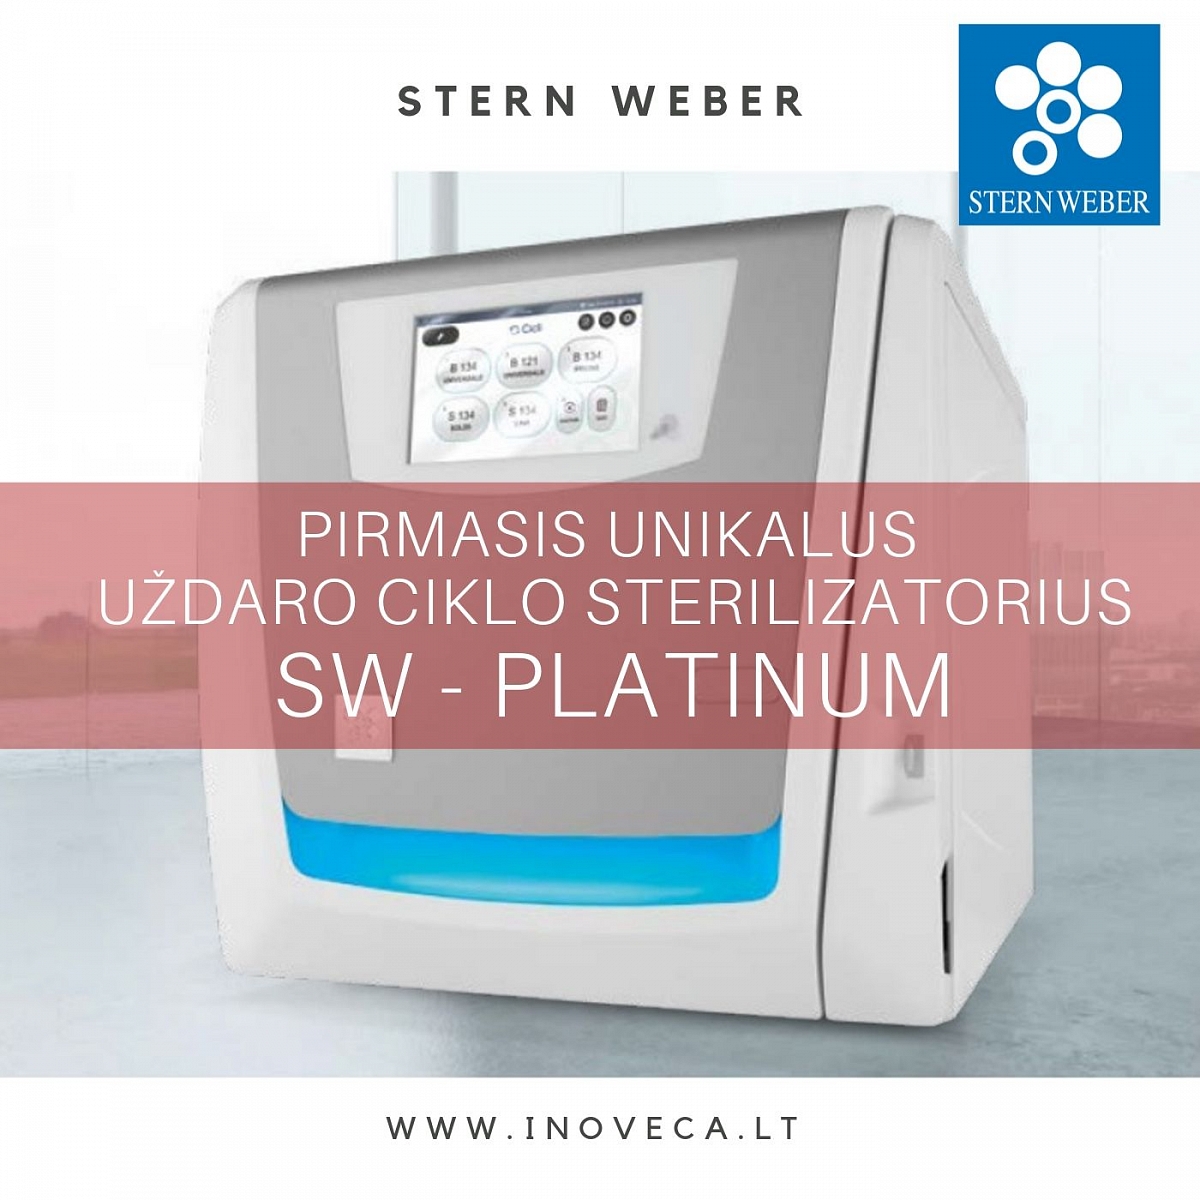 NAUJIENA - uždaro ciklo sterilizatorius Stern Weber SW-PLATINUM !